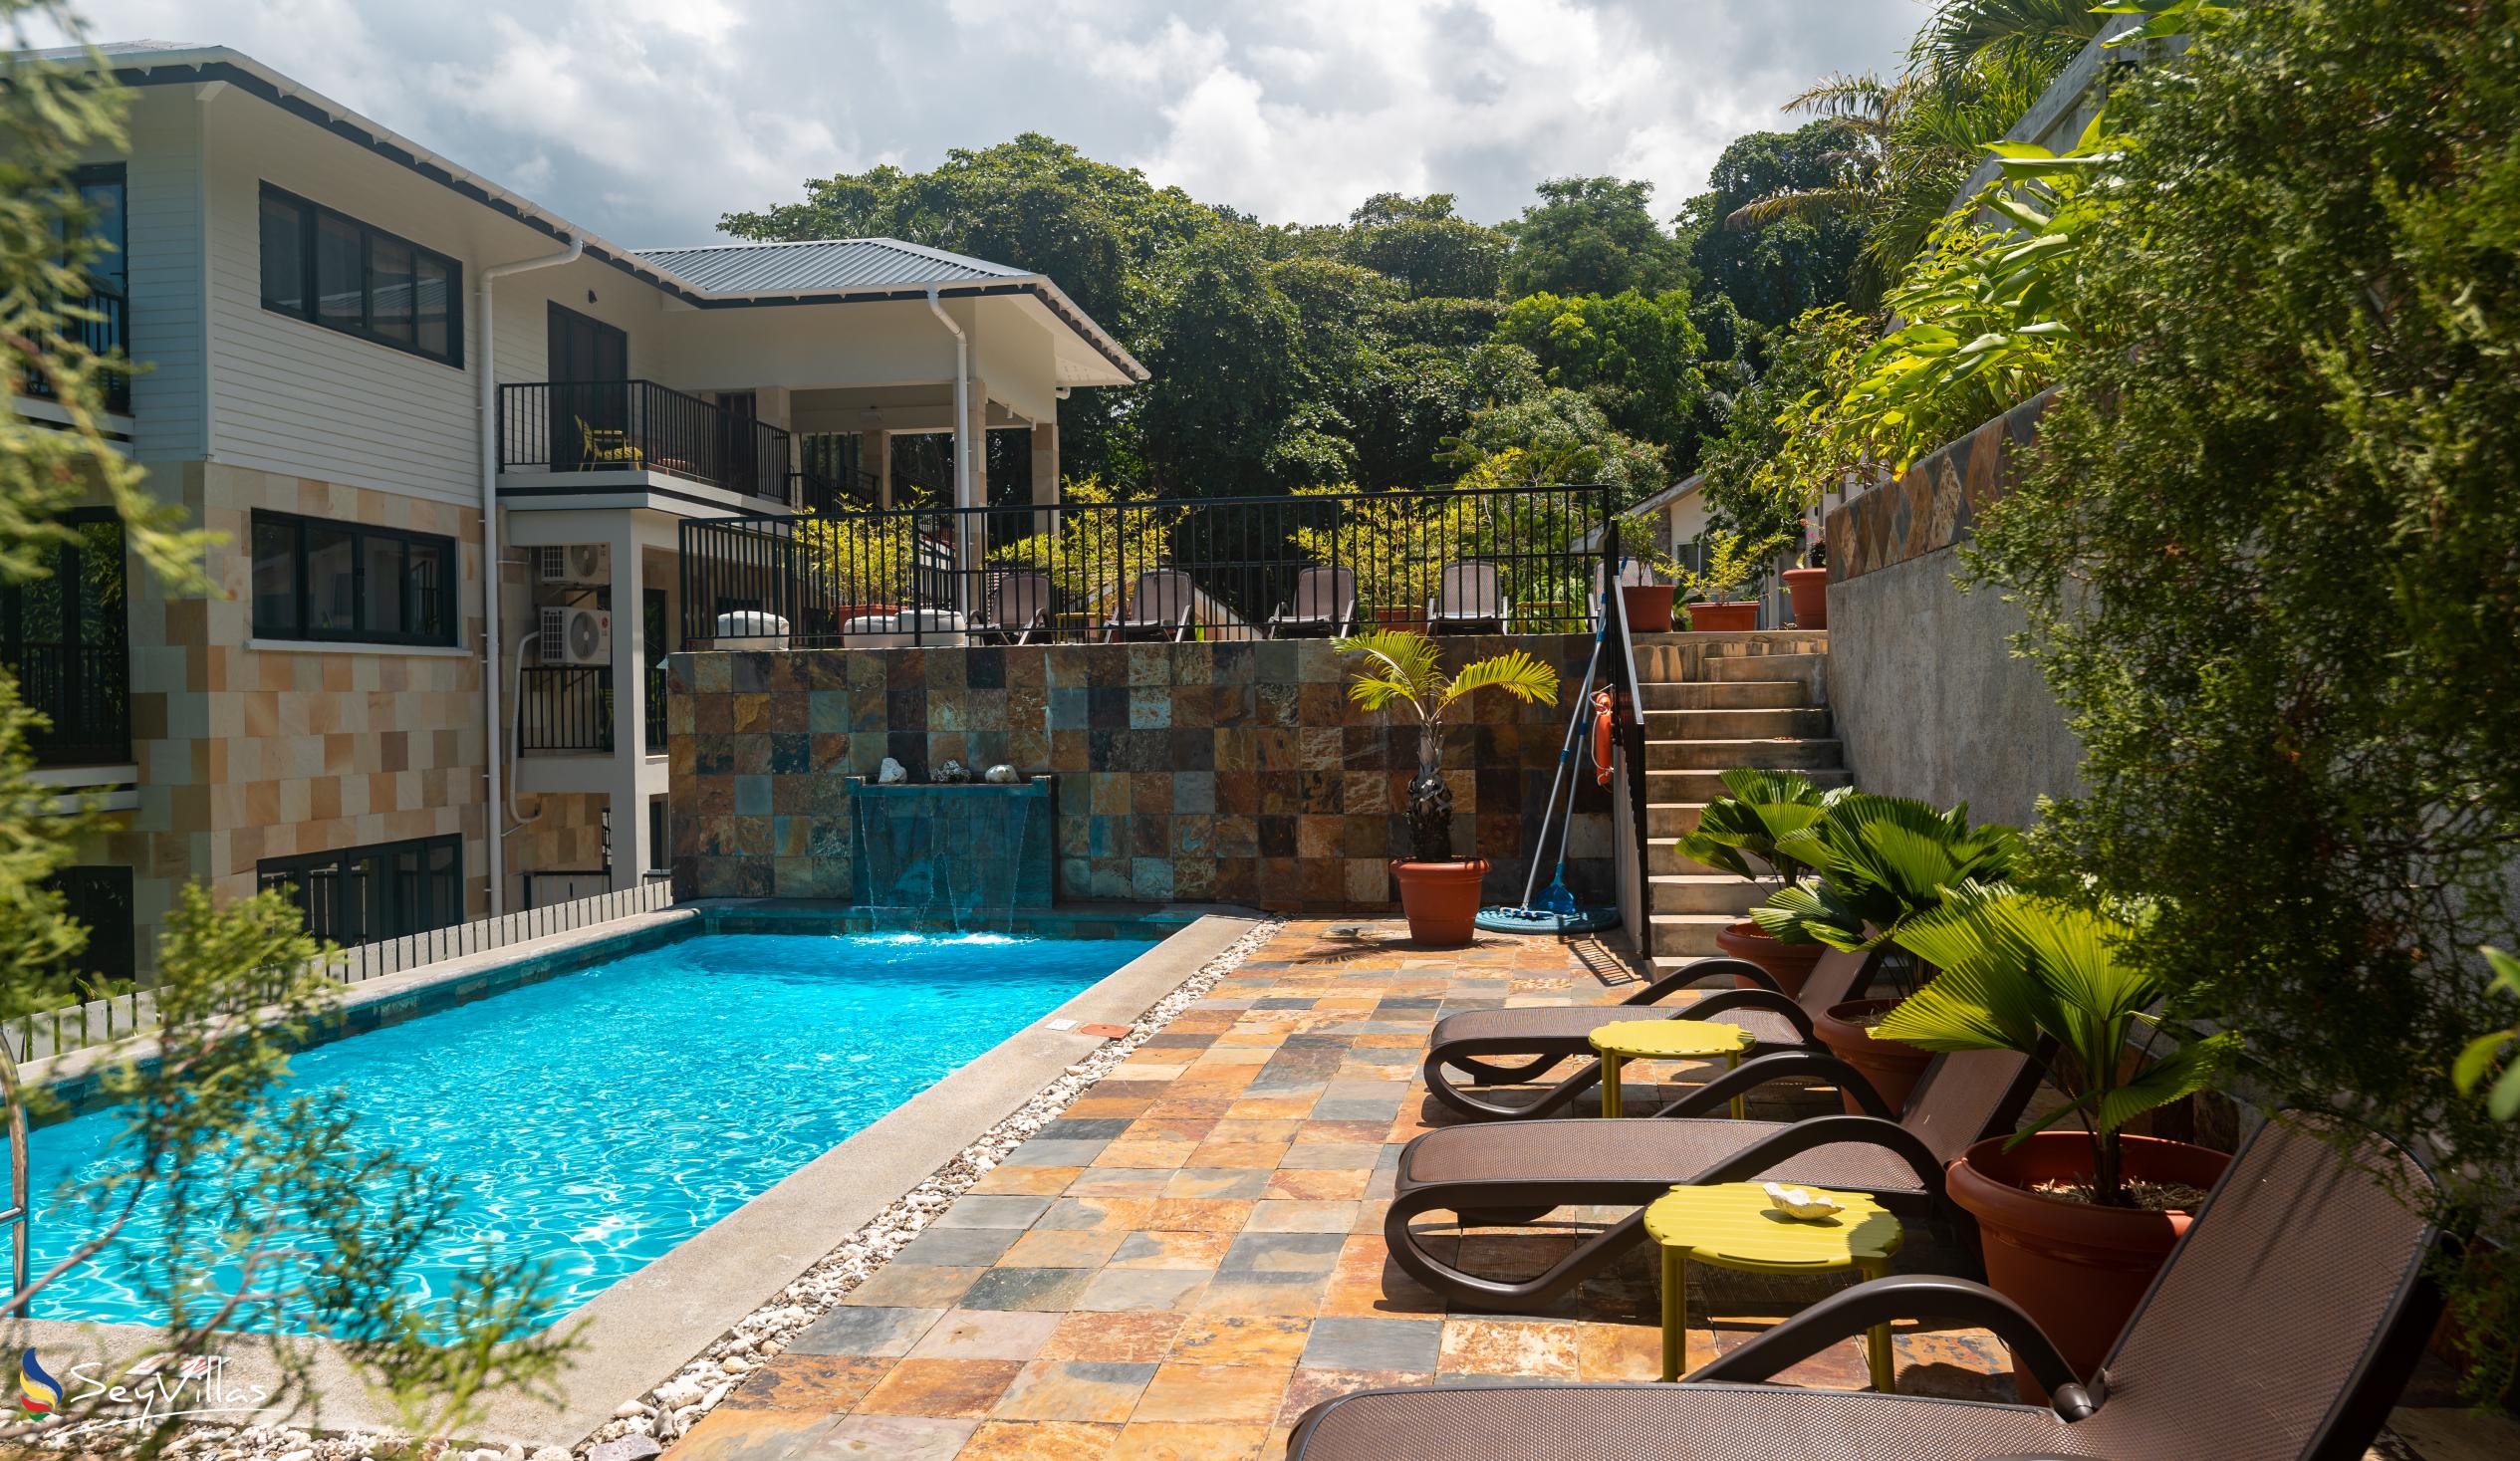 Photo 7: Lodoicea Apartments - Outdoor area - Mahé (Seychelles)